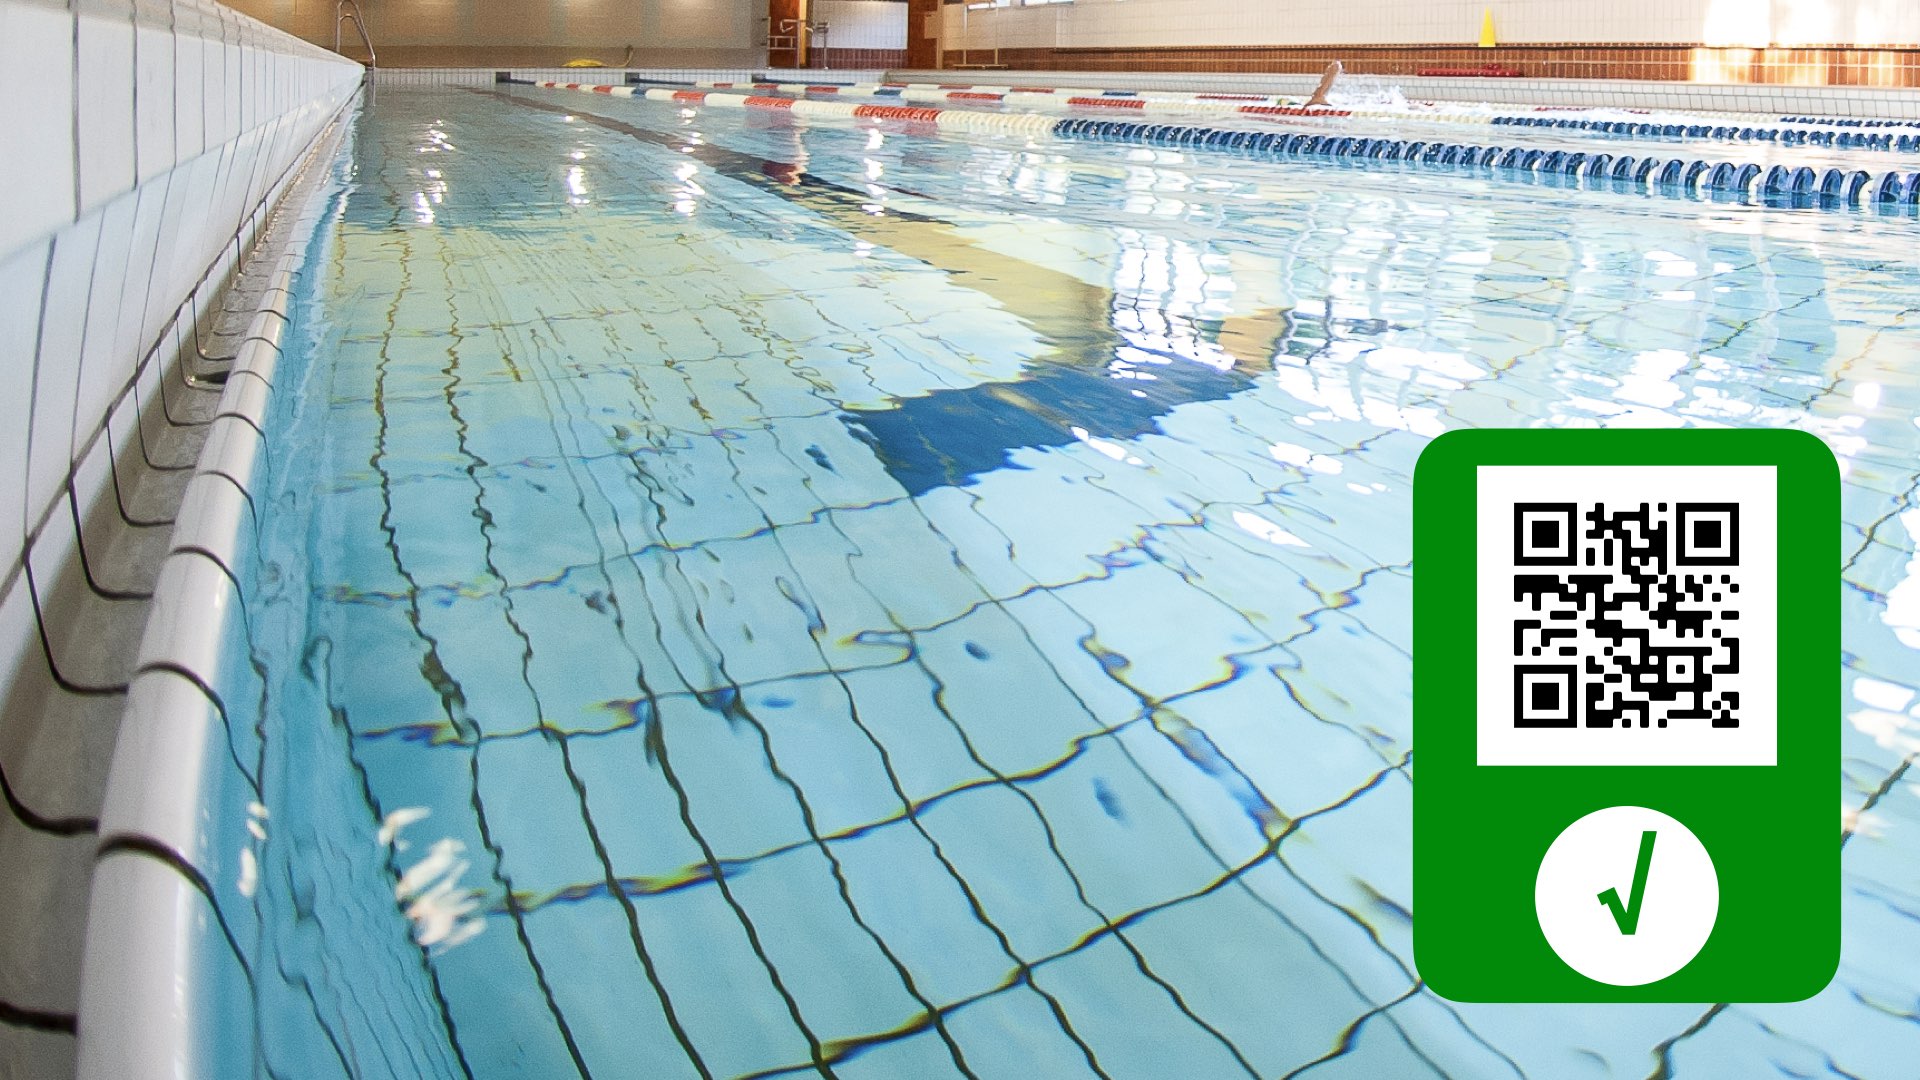 Bozza decreto, green pass obbligatorio per piscine dal 5 agosto. La presentazione di Draghi e Speranza